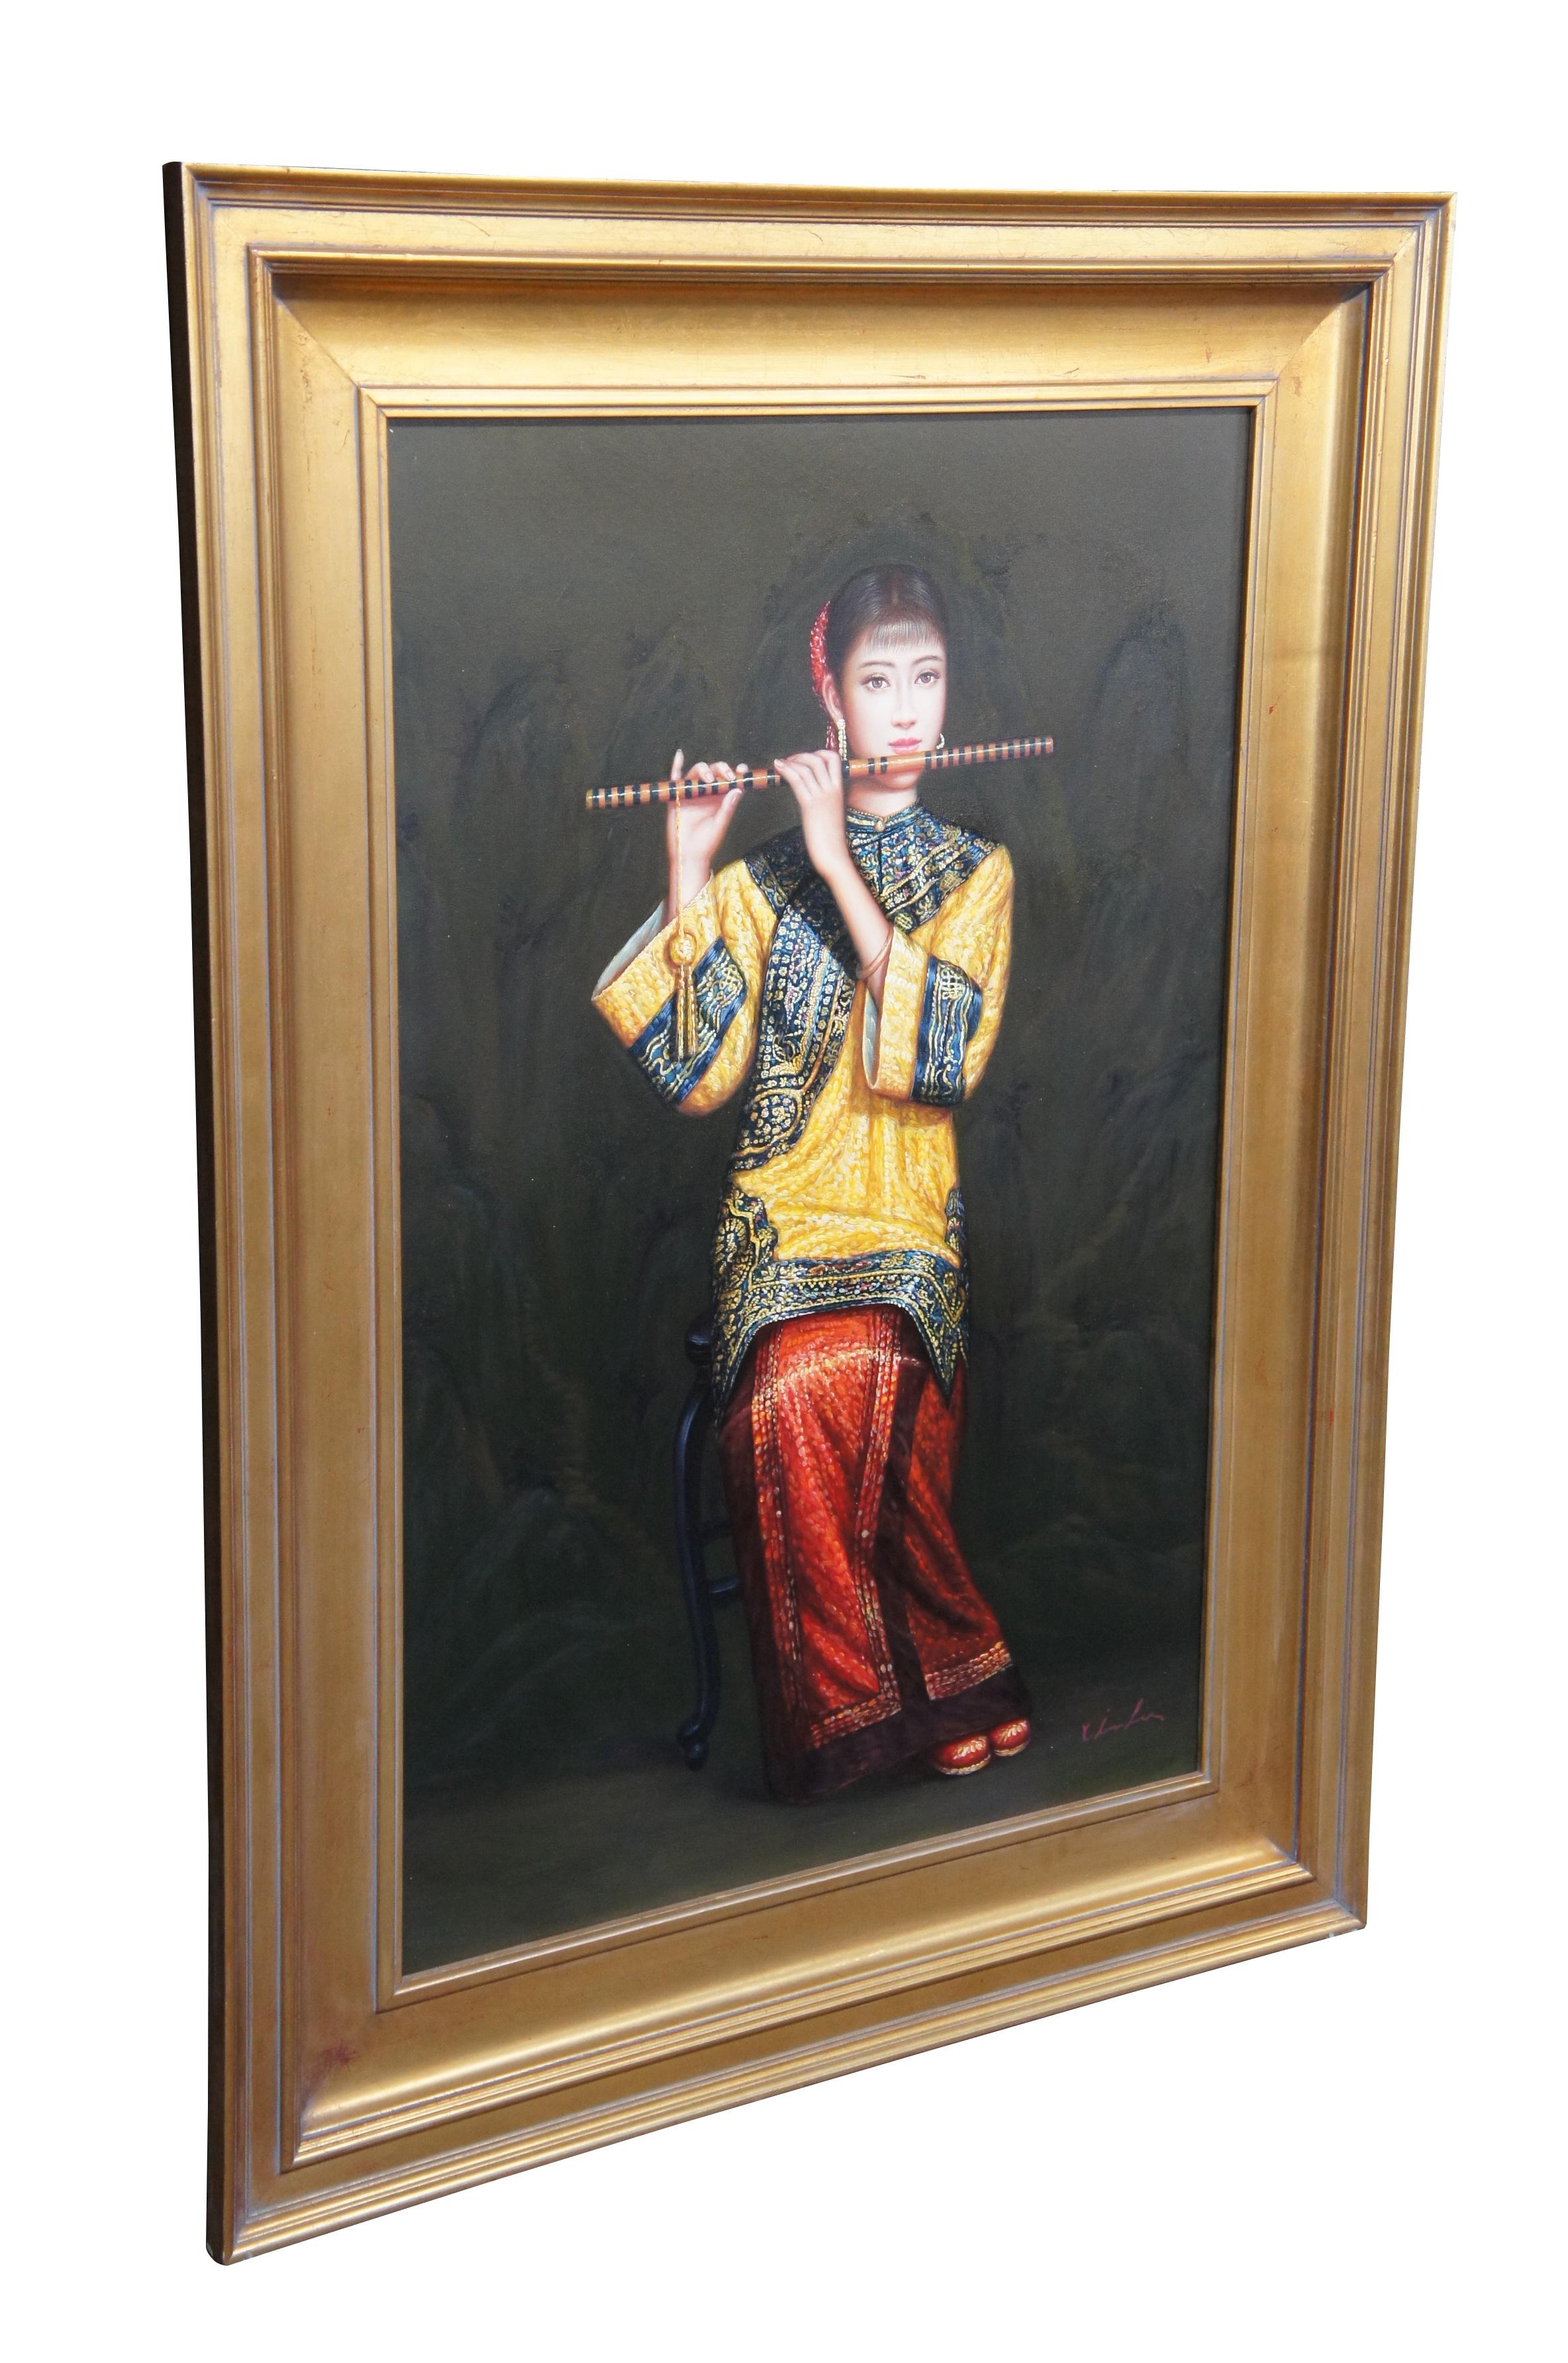 Vintage Femme chinoise jouant de la flûte peinture à l'huile sur toile d'après Chen Yifei.  Un jeune musicien en tenue de cour traditionnelle joue du Dizi / flûte de bambou.

Chen Yifei (chinois : 陈逸飞 ; 12 avril 1946 - 10 avril 2005) était un